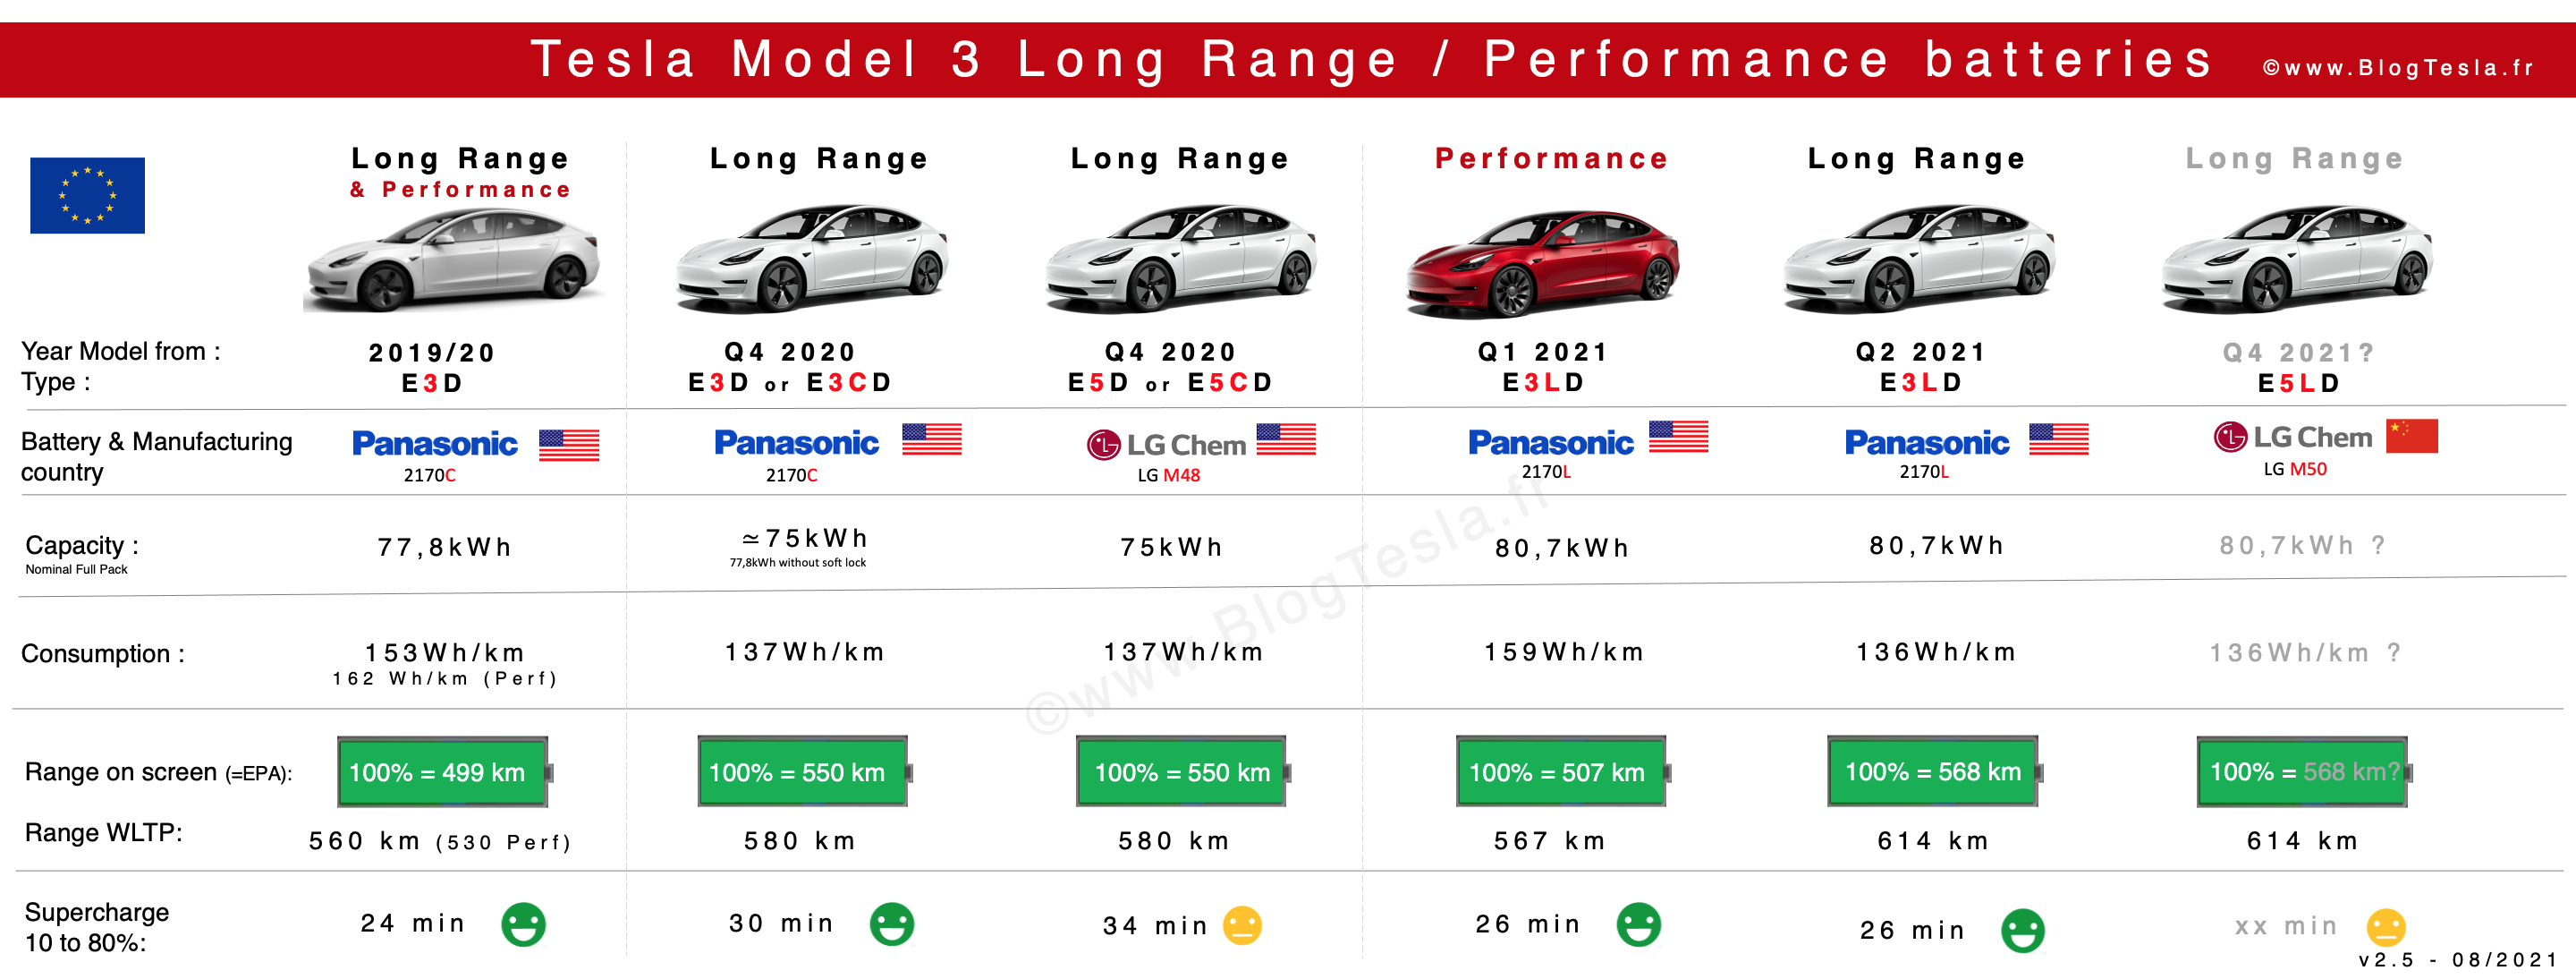 Batteries-Tesla-Model-3-LR-Performance.png